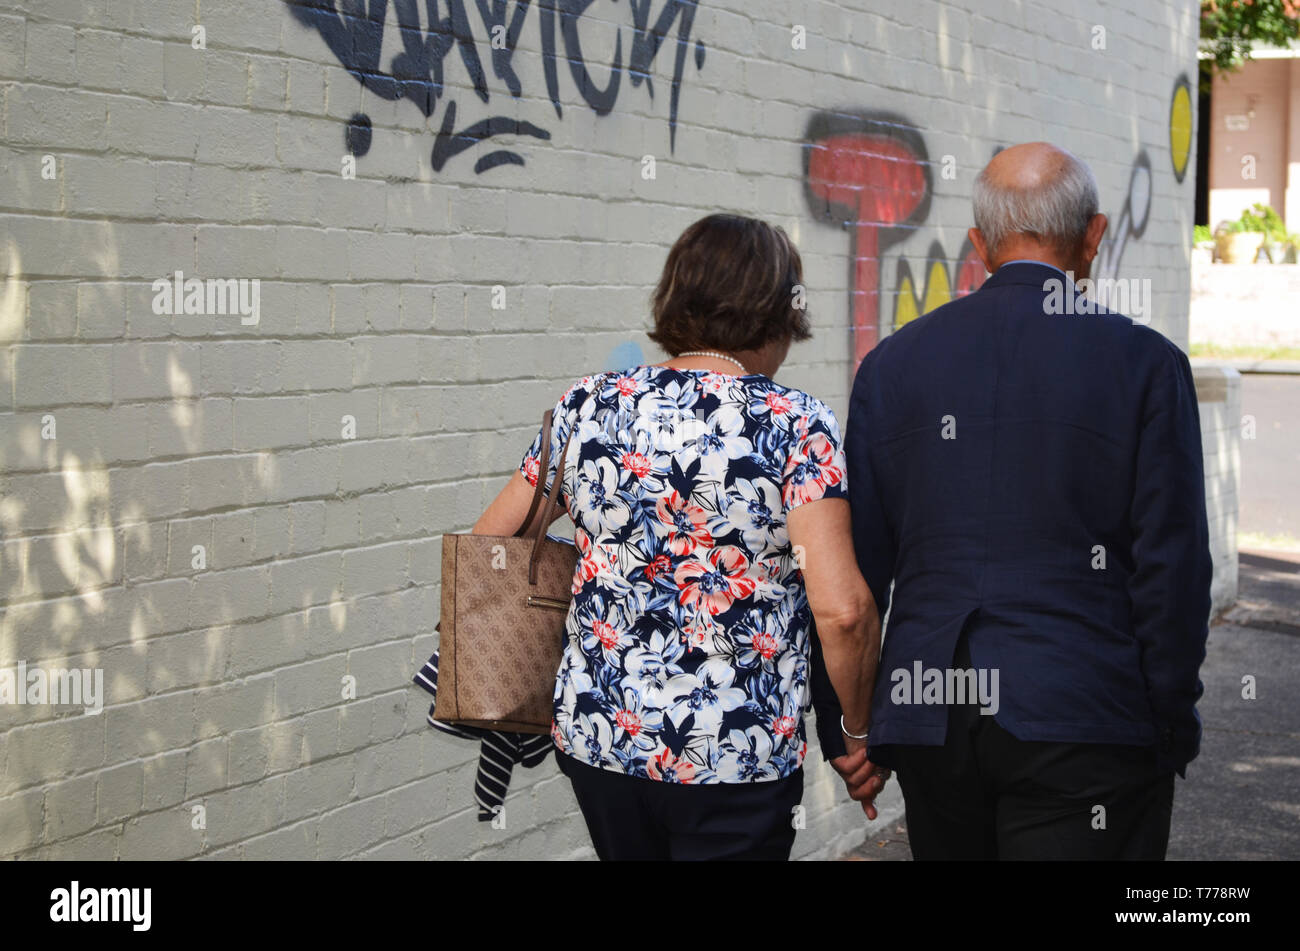 Elderly couple walking in street Stock Photo